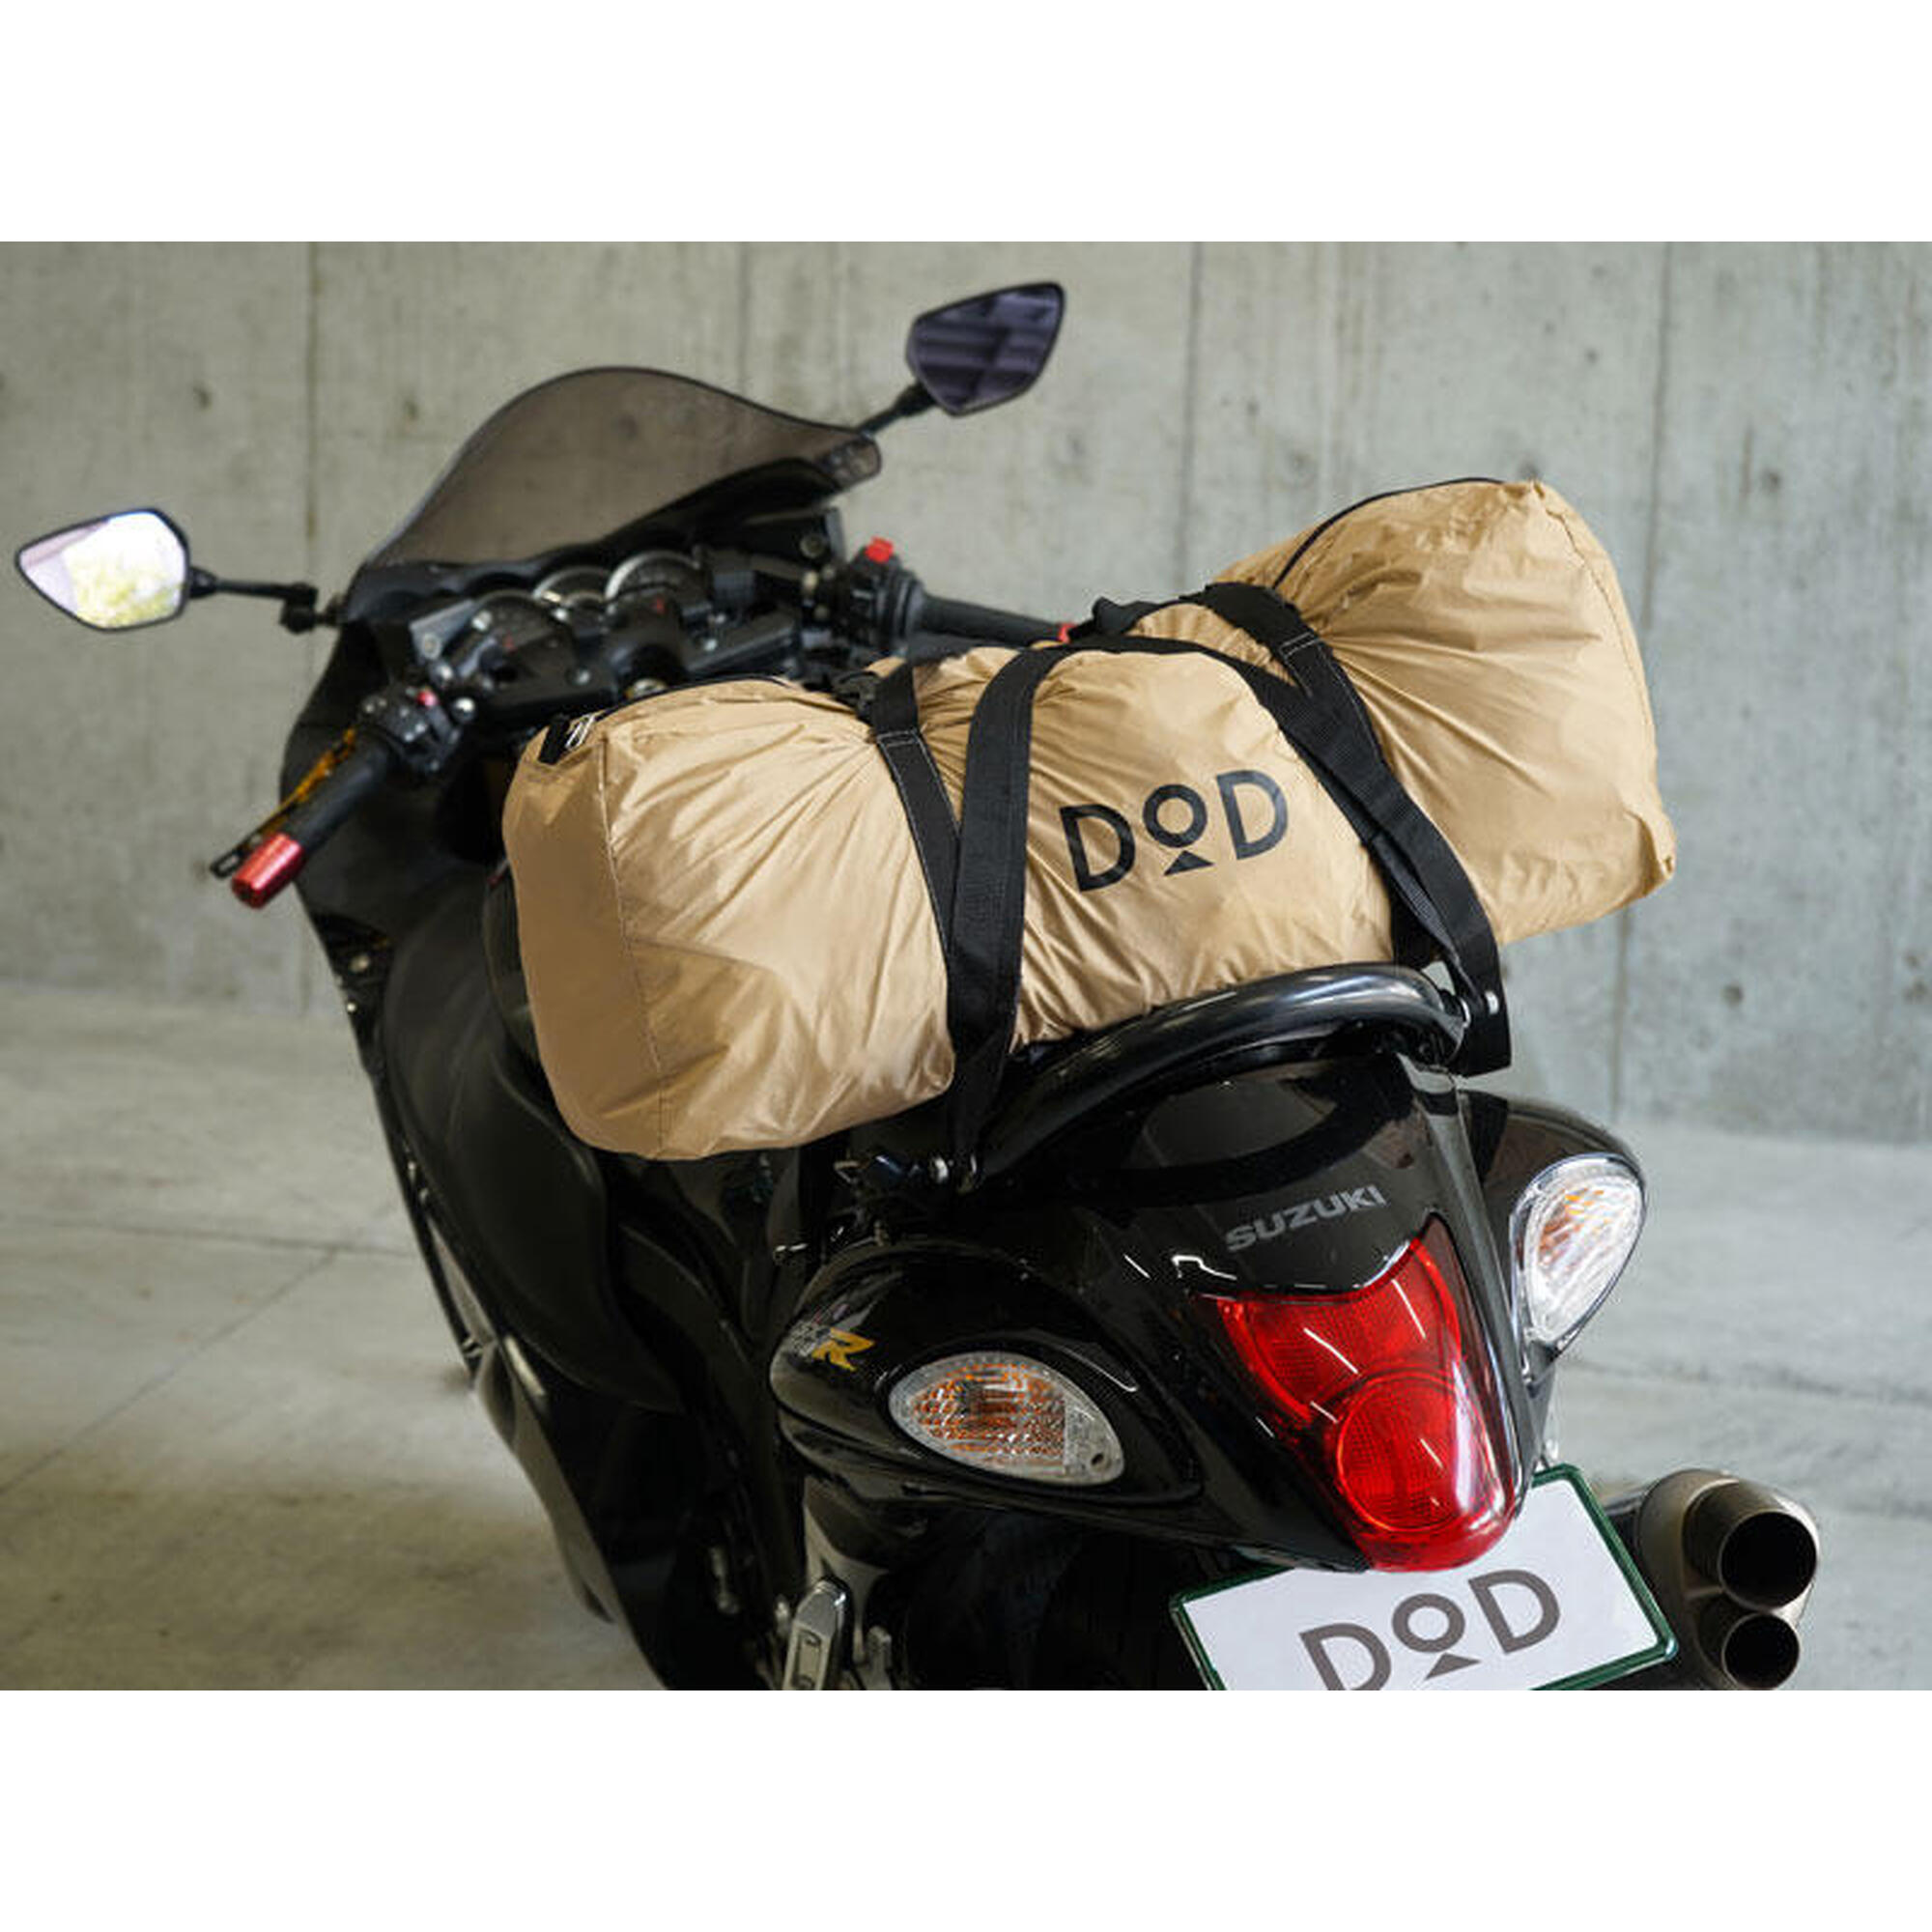 Rider's Bike In T2-466-TN 2人露營帳篷 - 棕褐色